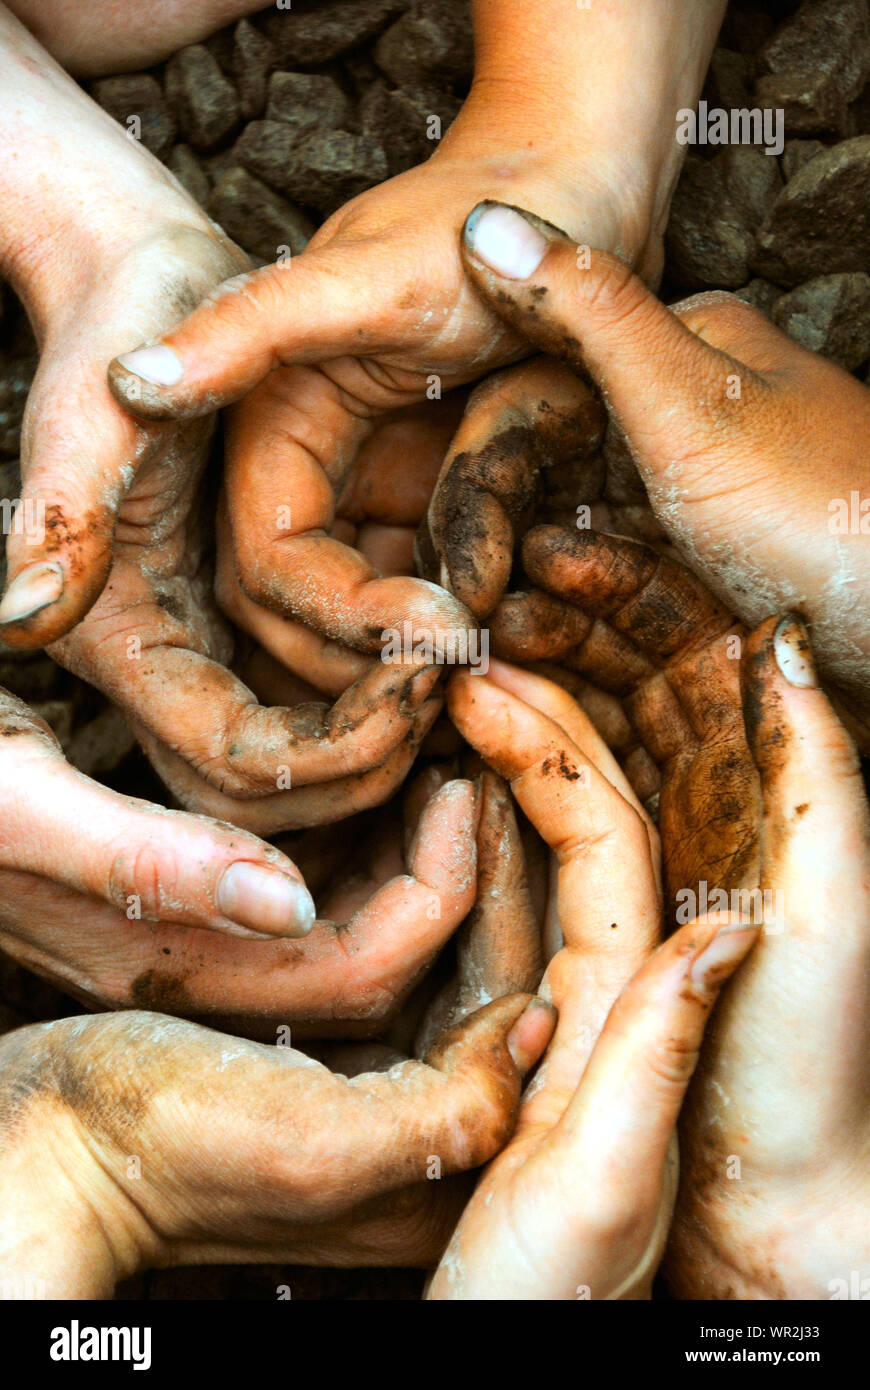 Eine Spirale der weißen Hände voll von braunen Schmutz und Erde inspirierende Zusammenarbeit, gemeinsam als Gruppe, in einem permakultur Workshop, in Quebec, Kanada Stockfoto